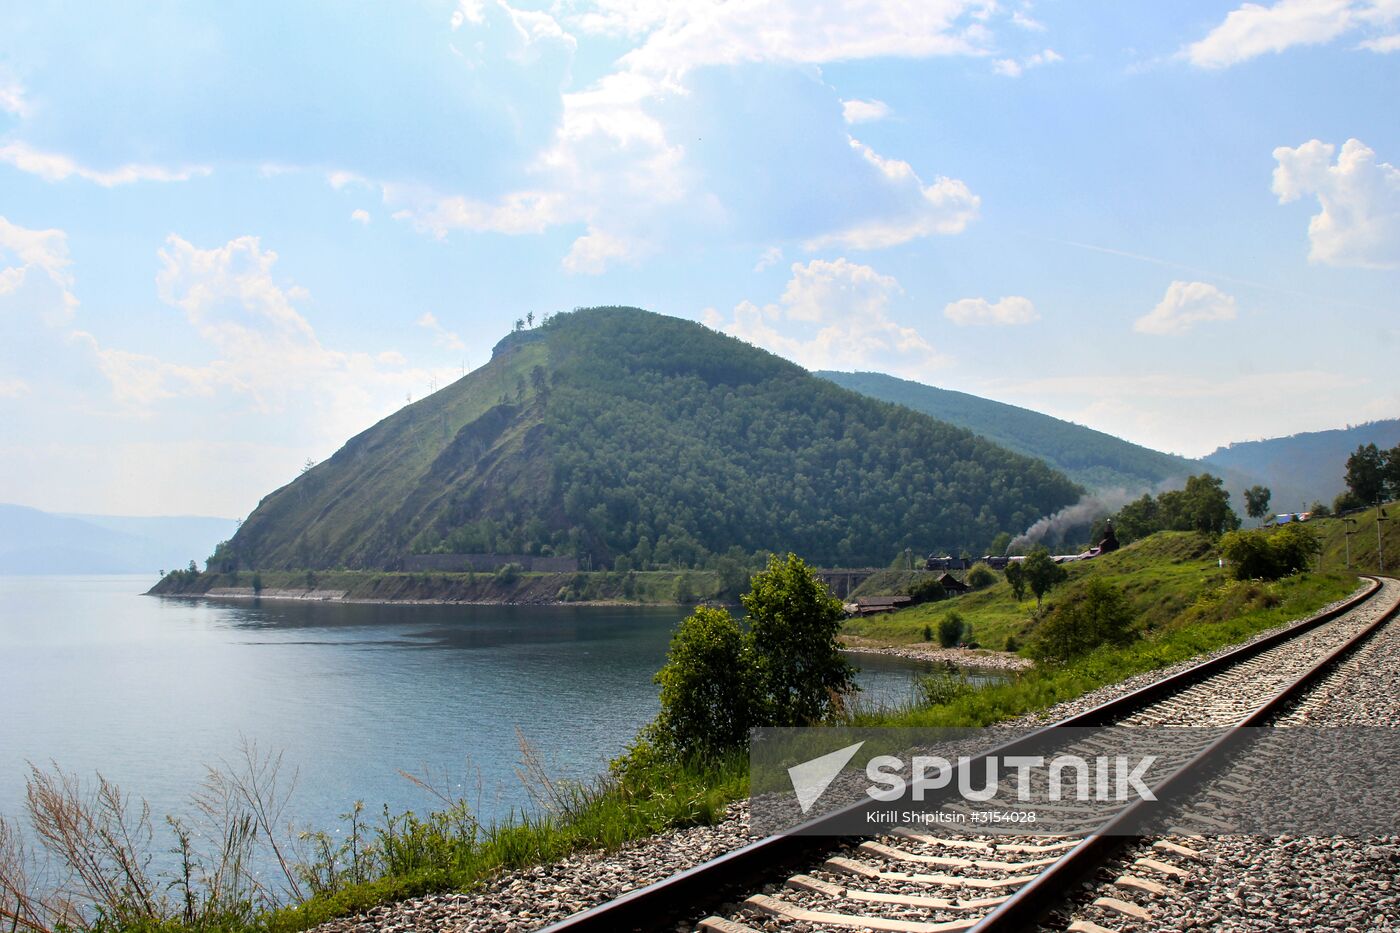 Circum-Baikal railway and Great Baikal Trail